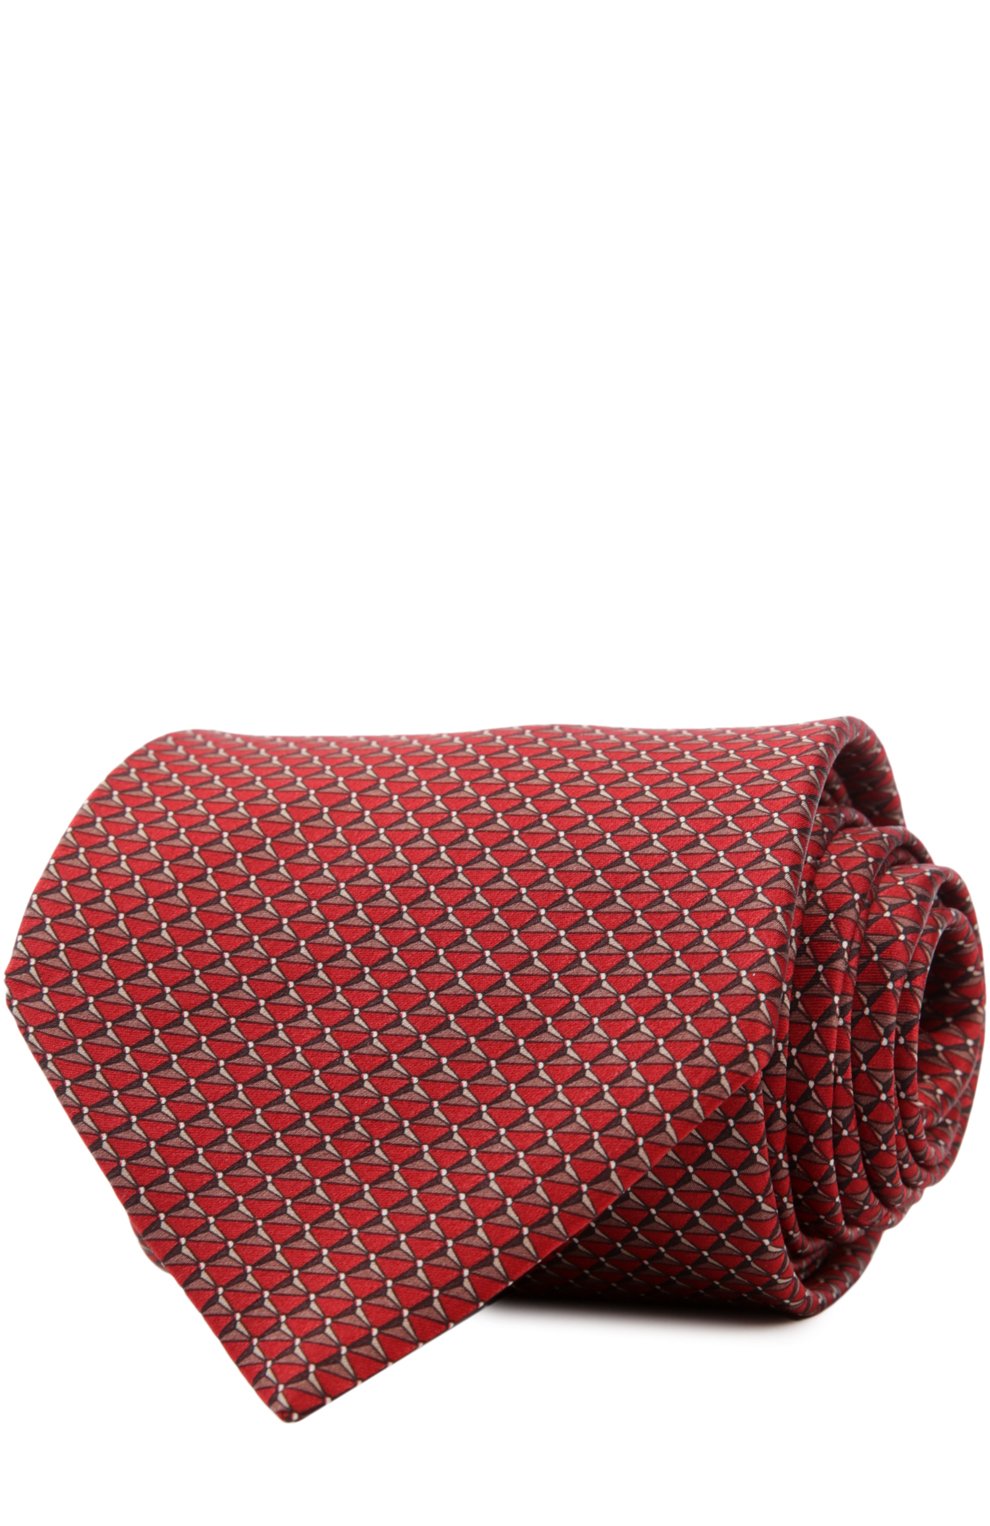 Мужской комплект из галстука и платка LANVIN красного цвета, арт. 4228 | Фото 1 (Материал: Текстиль, Шелк)